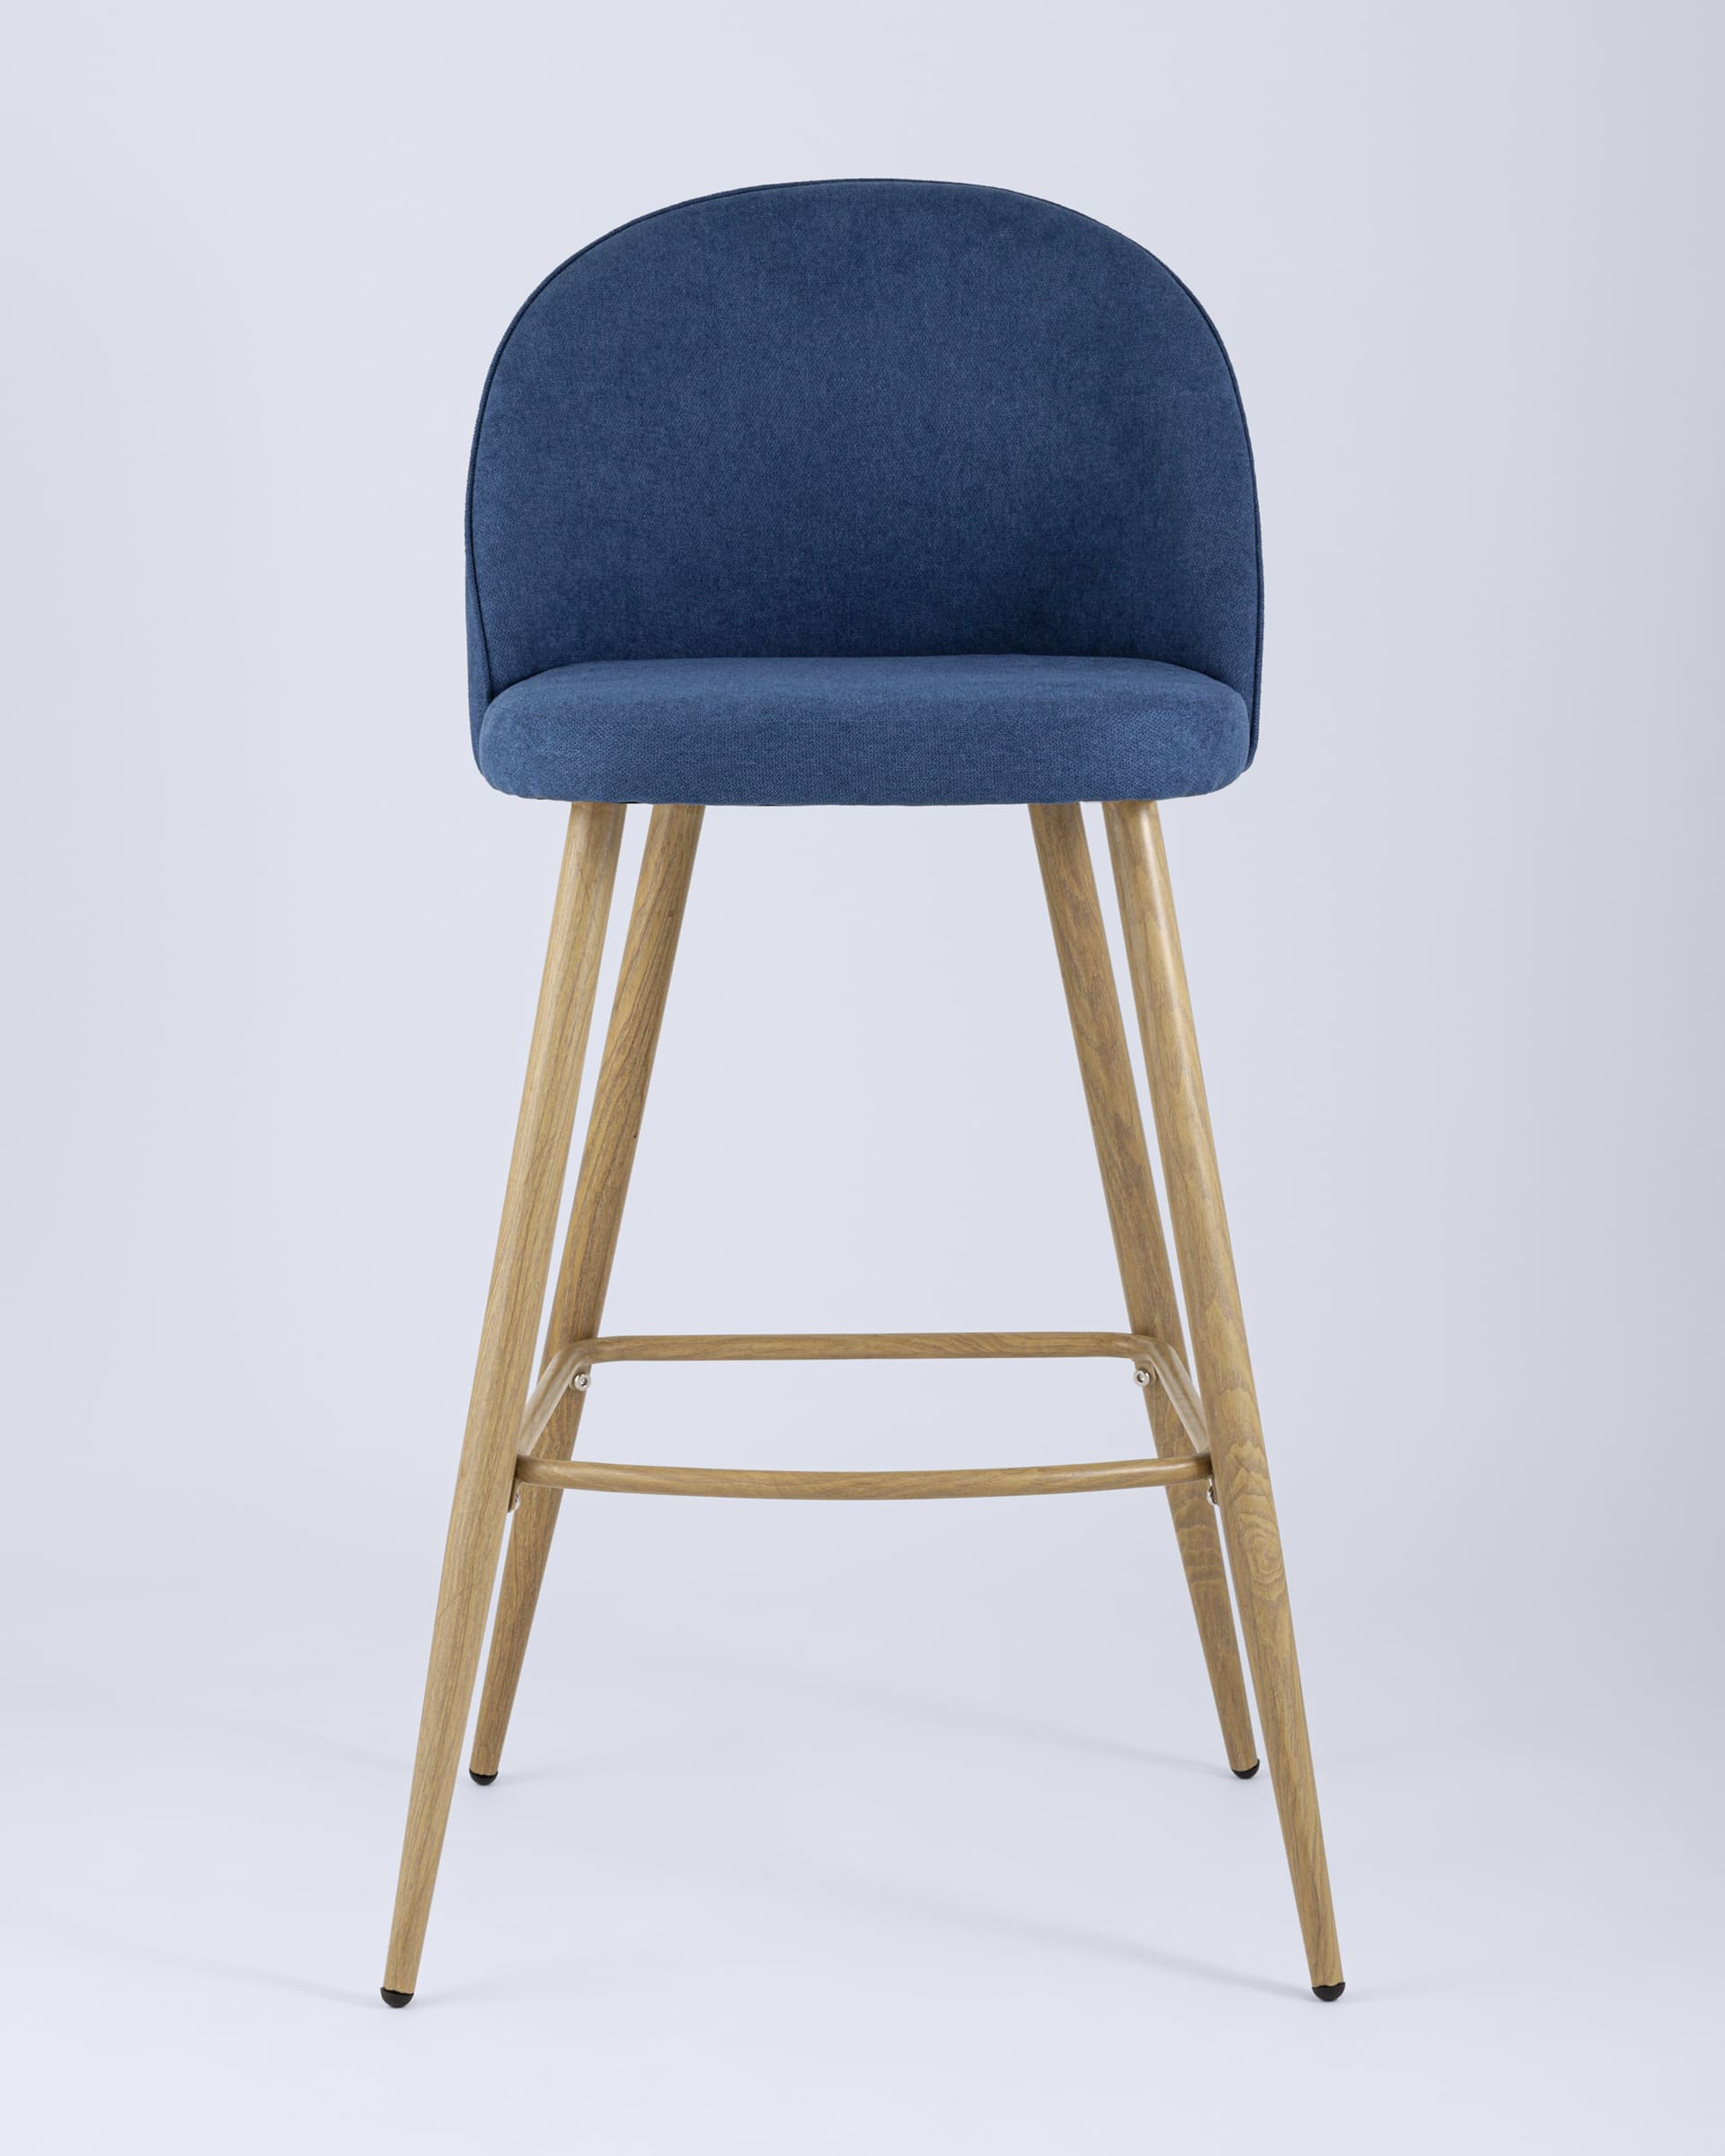 Барный стул Лион обивка тканевая шенилл синего цвета, ножки под цвет светлого дерева из металла